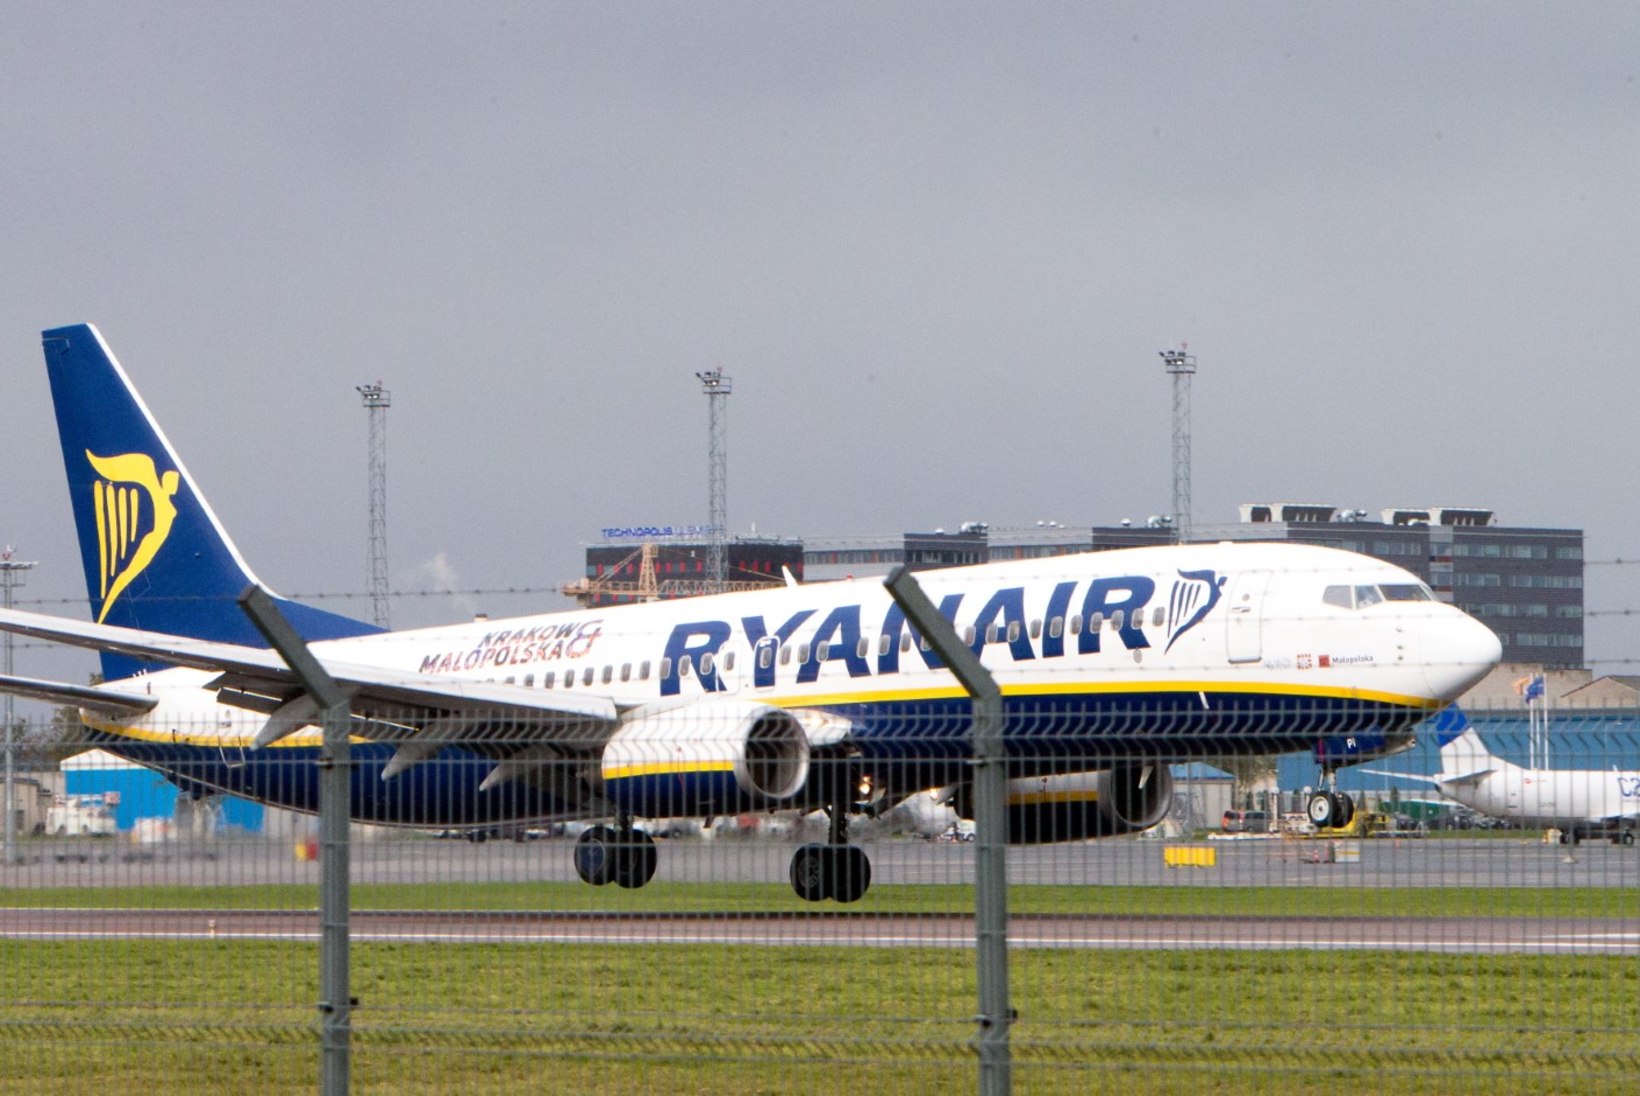 Ryanairi lennupiletid maksavad pühapäeval vaid 19,85 eurot